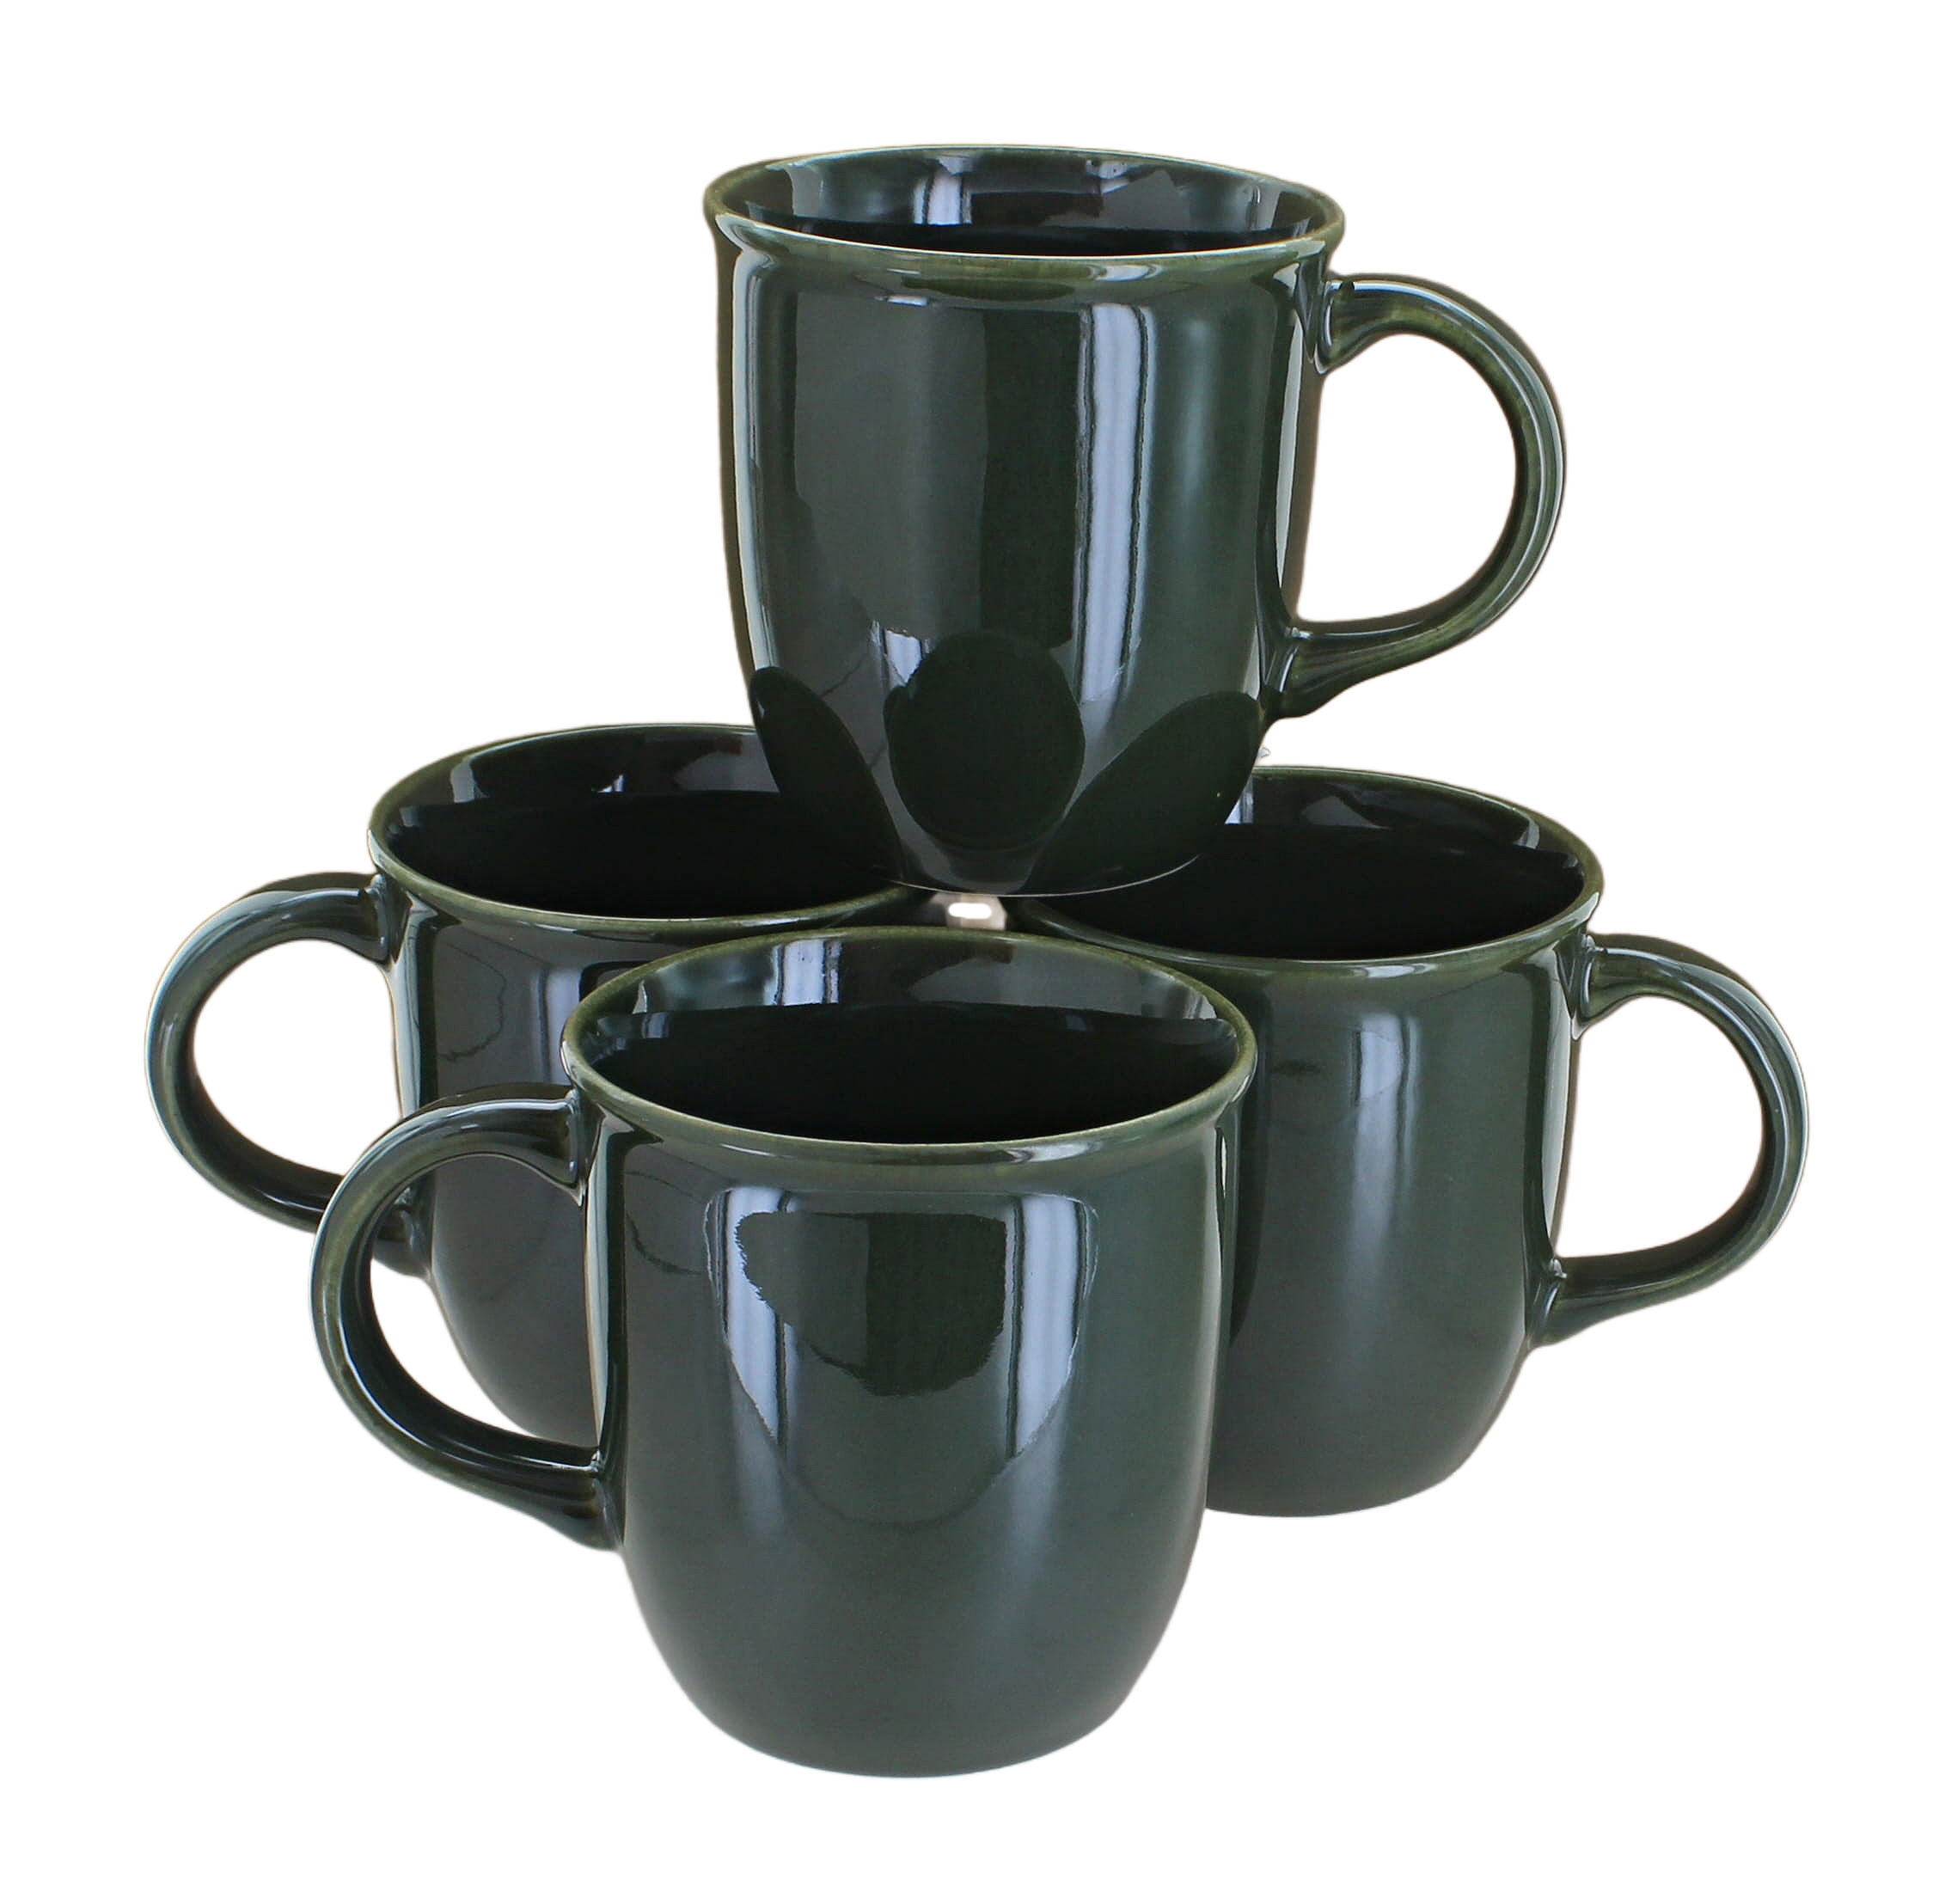 Cafepress - Star Trek Tng Large Mug - 15 oz Ceramic Large Mug, Black